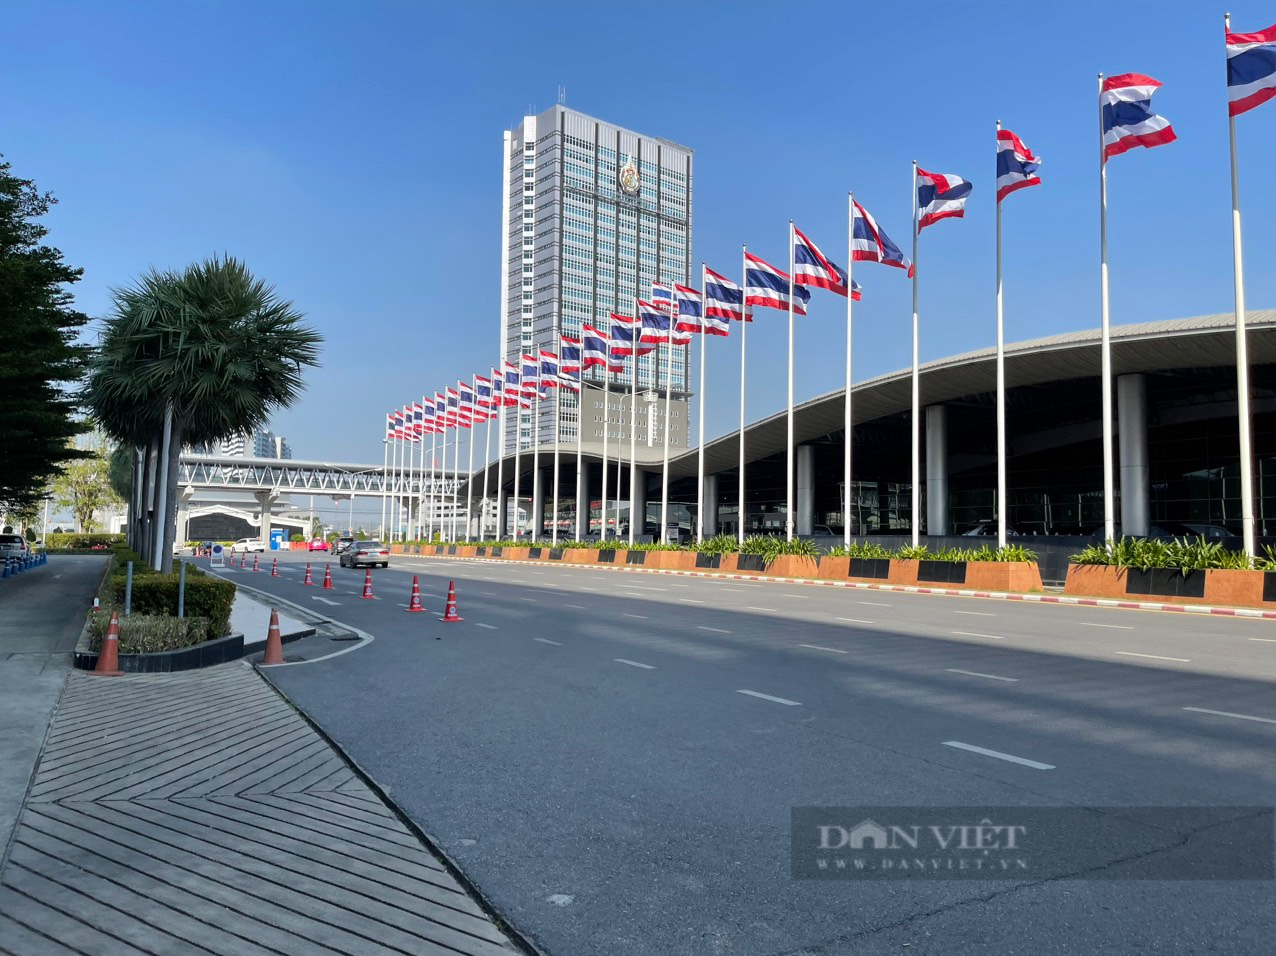 ภาพระยะใกล้ของโรงแรม Vietnam Tel ในประเทศไทย - รูปภาพ 8.